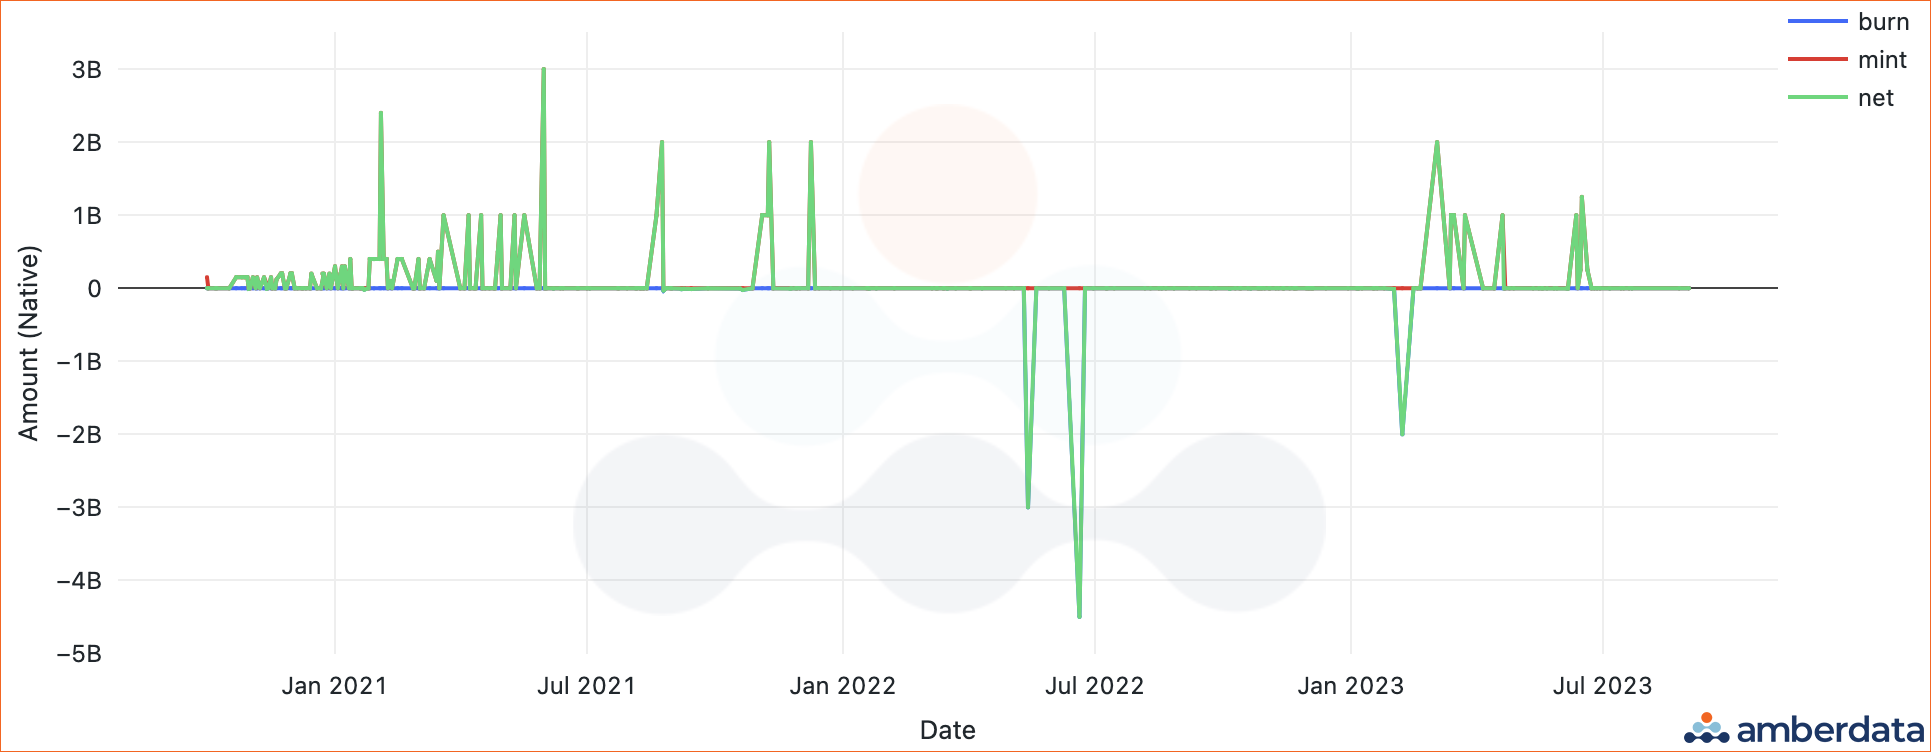 Amberdata API USDT market cap since October 2020. Burn, mint, net. 